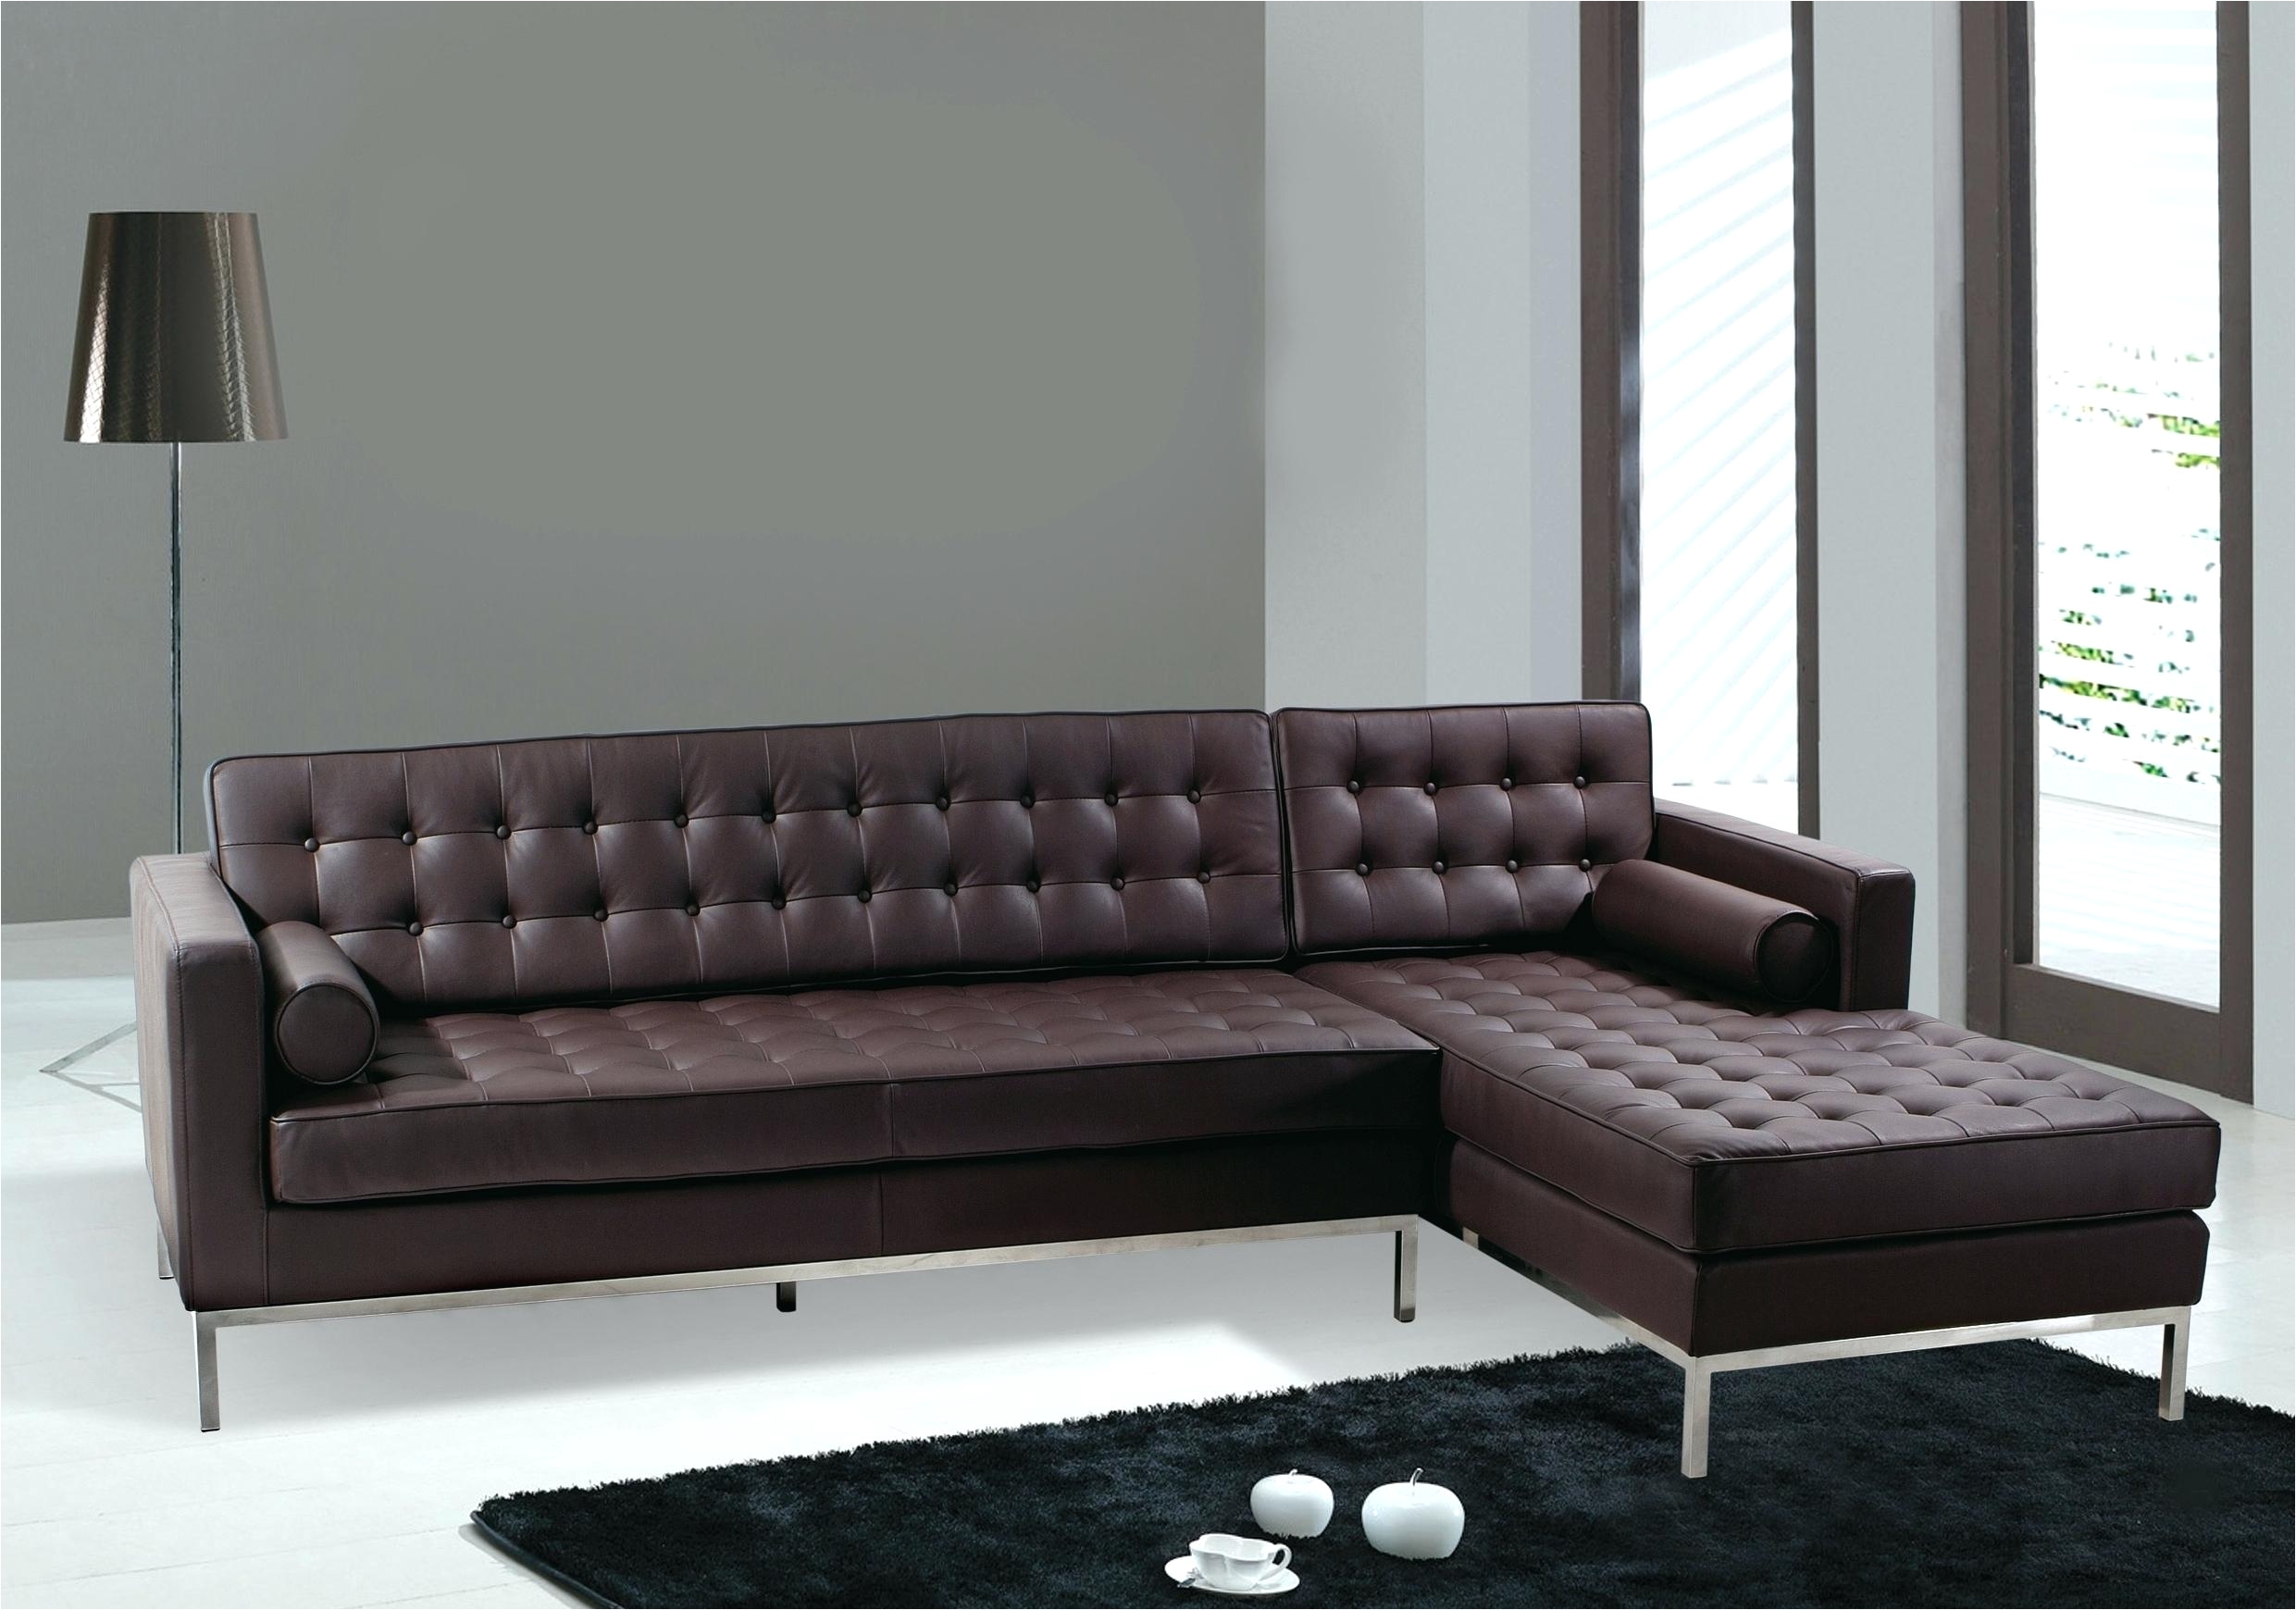 italian sectional sofa sas leather furniture toronto sleeper sofas